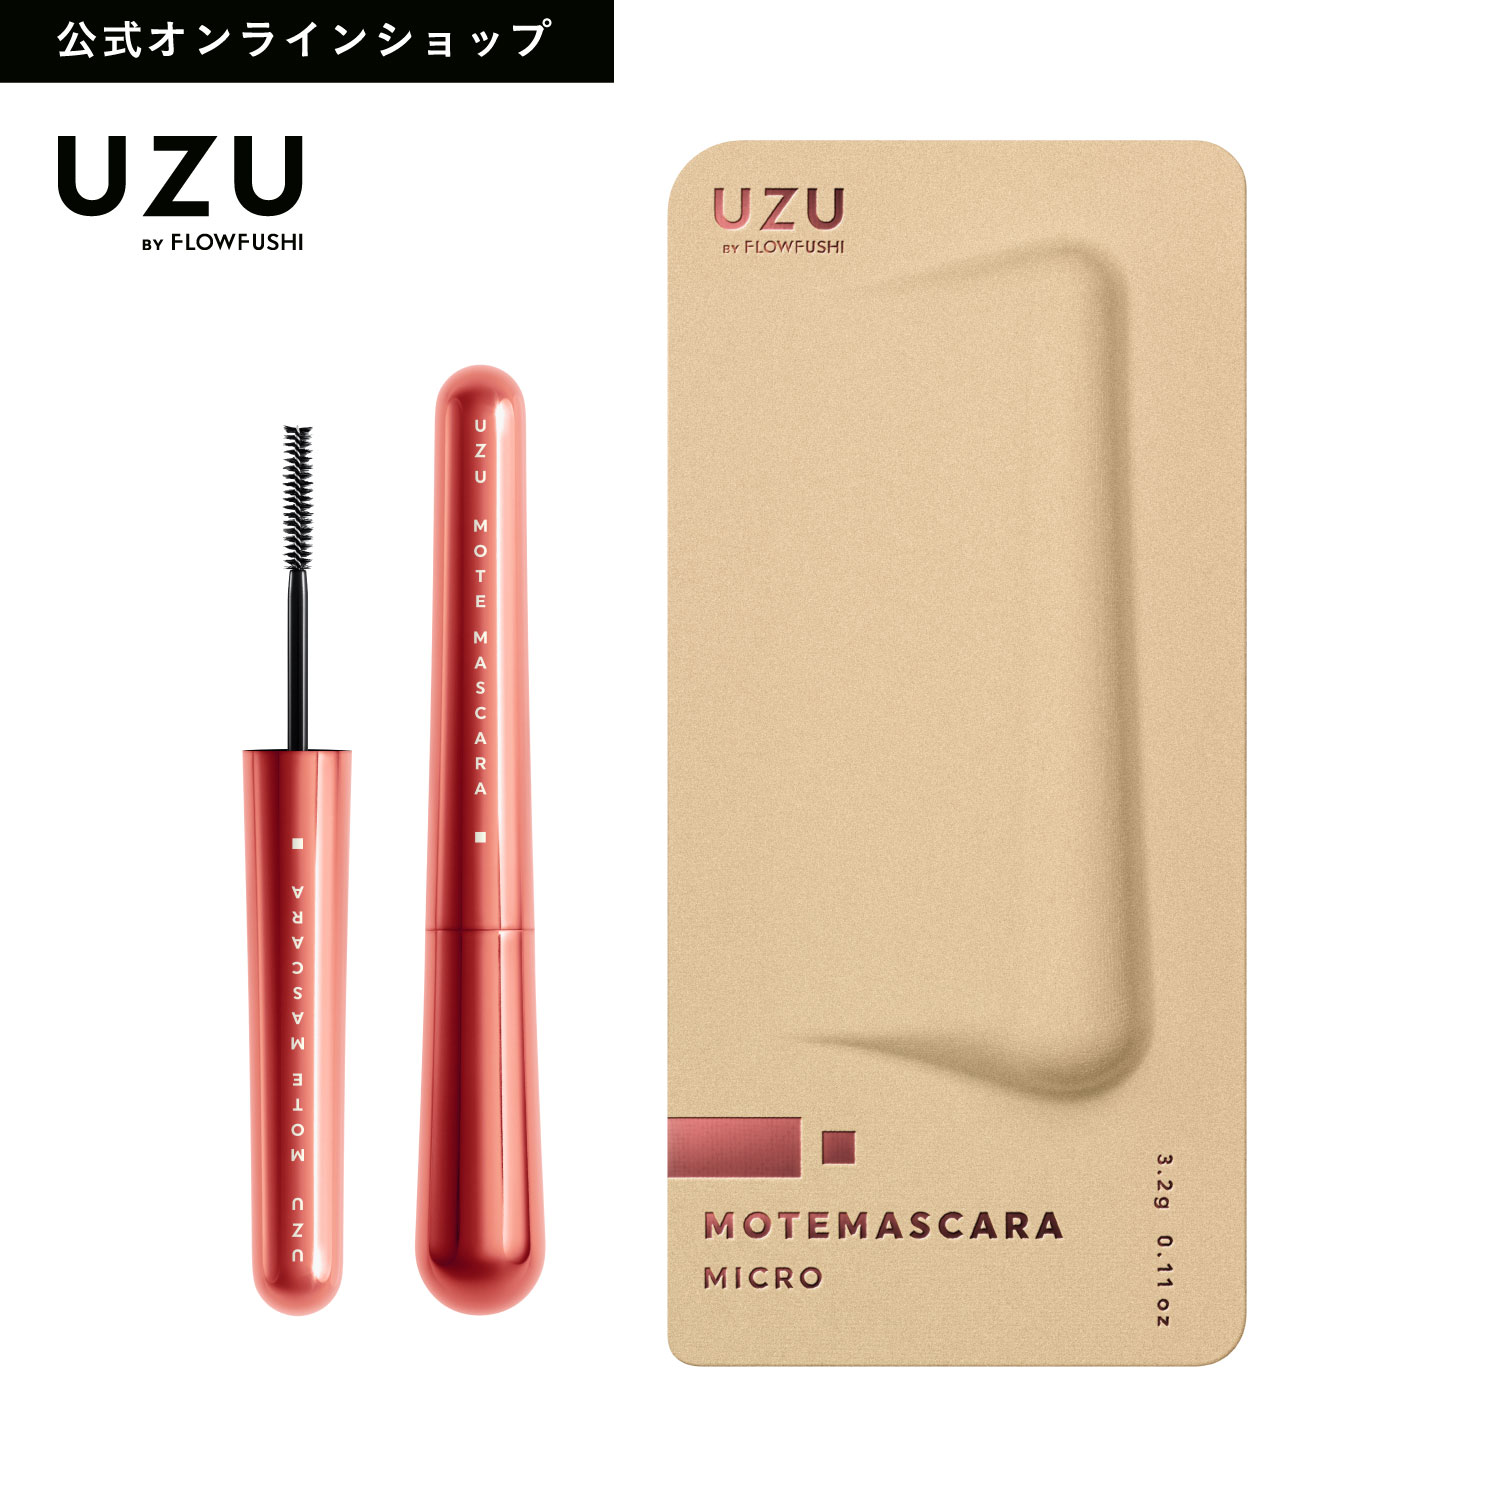 【特別SALE33 OFF】【公式限定】UZU 38℃ MOTE MASCARA RED(レッド) カラーマスカラ 赤マスカラ まつげケア お湯オフ 日本製 化粧品 赤 送料無料